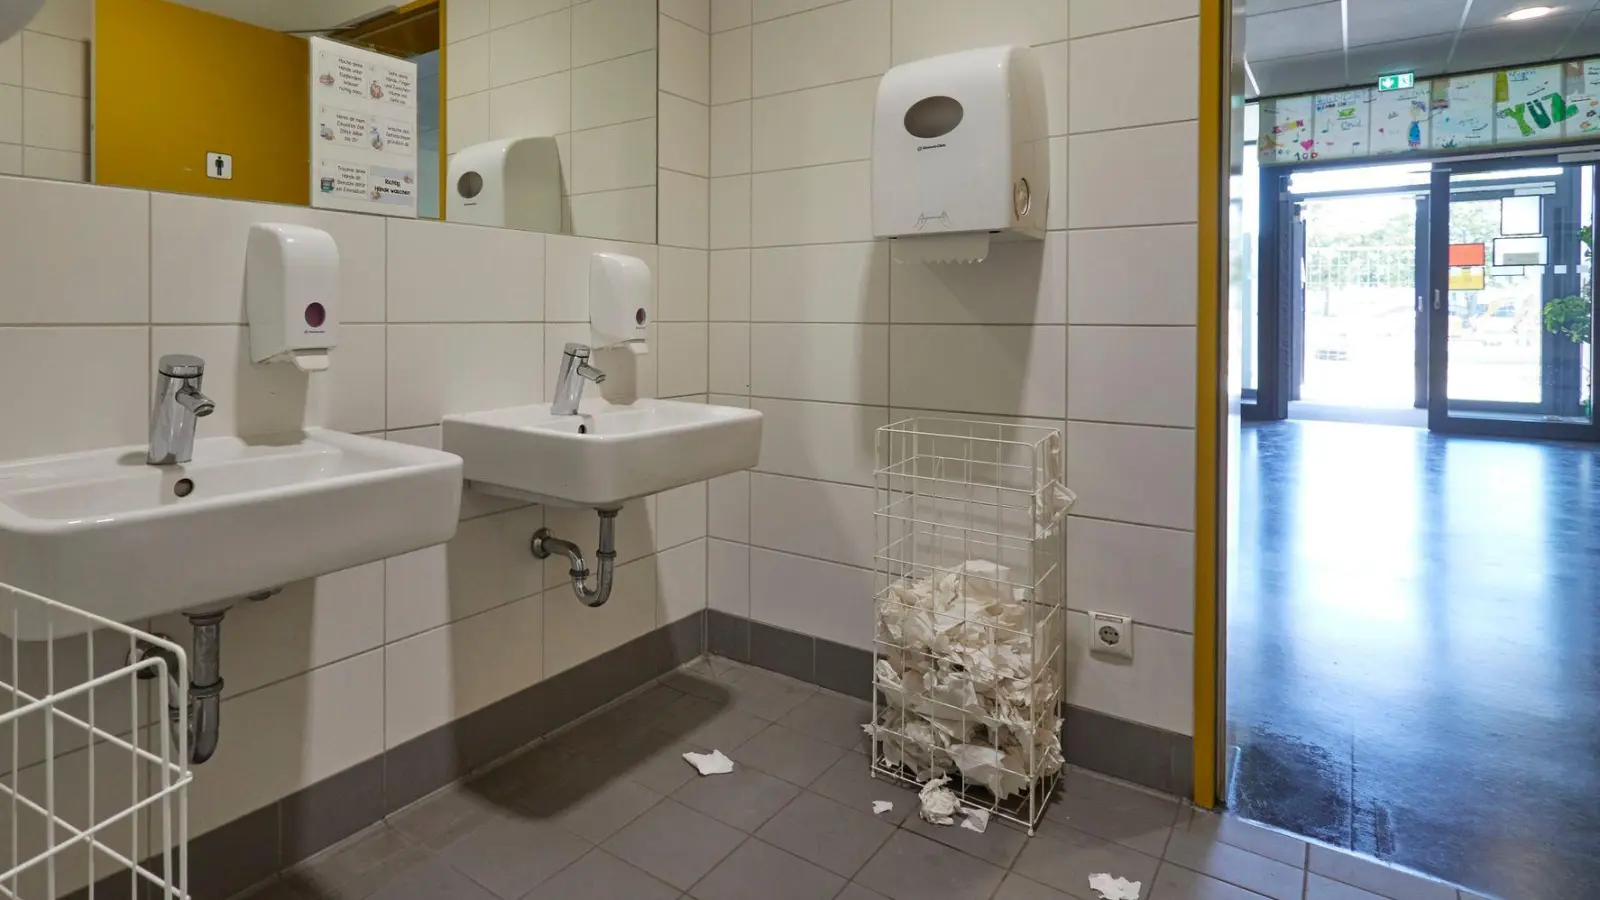 In vielen Schulen sind die Toiletten verschmutzt, beschädigt und unhygienisch - was viele Kinder davon abhält, sie zu benutzen. (Foto: Jörg Carstensen/dpa)